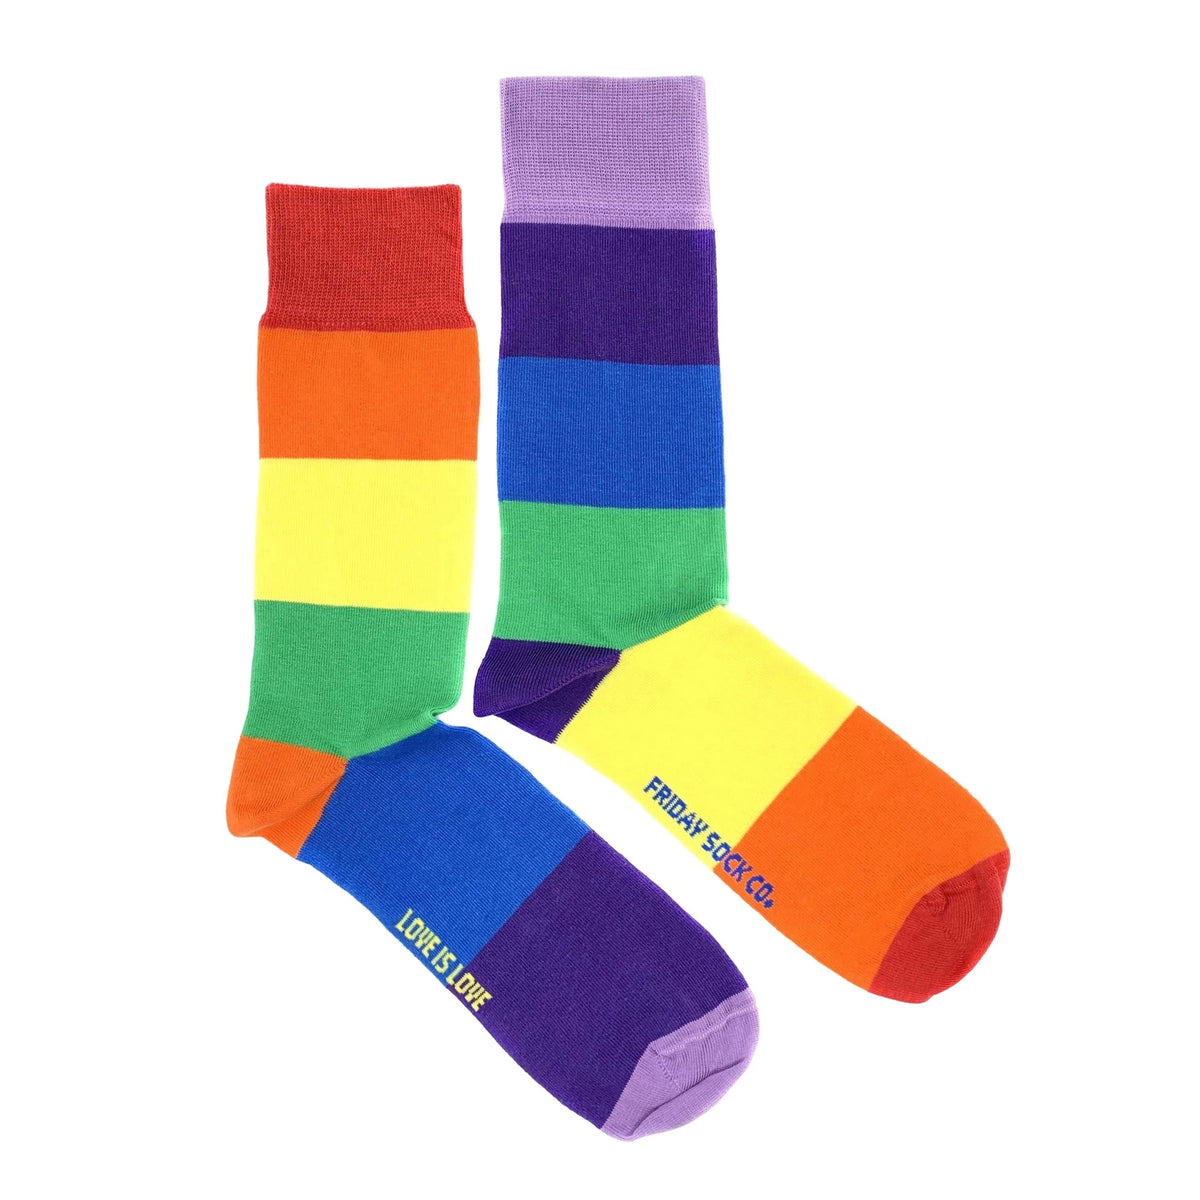 Men's Pride Socks | Mismatched by Design | Friday Sock Co.